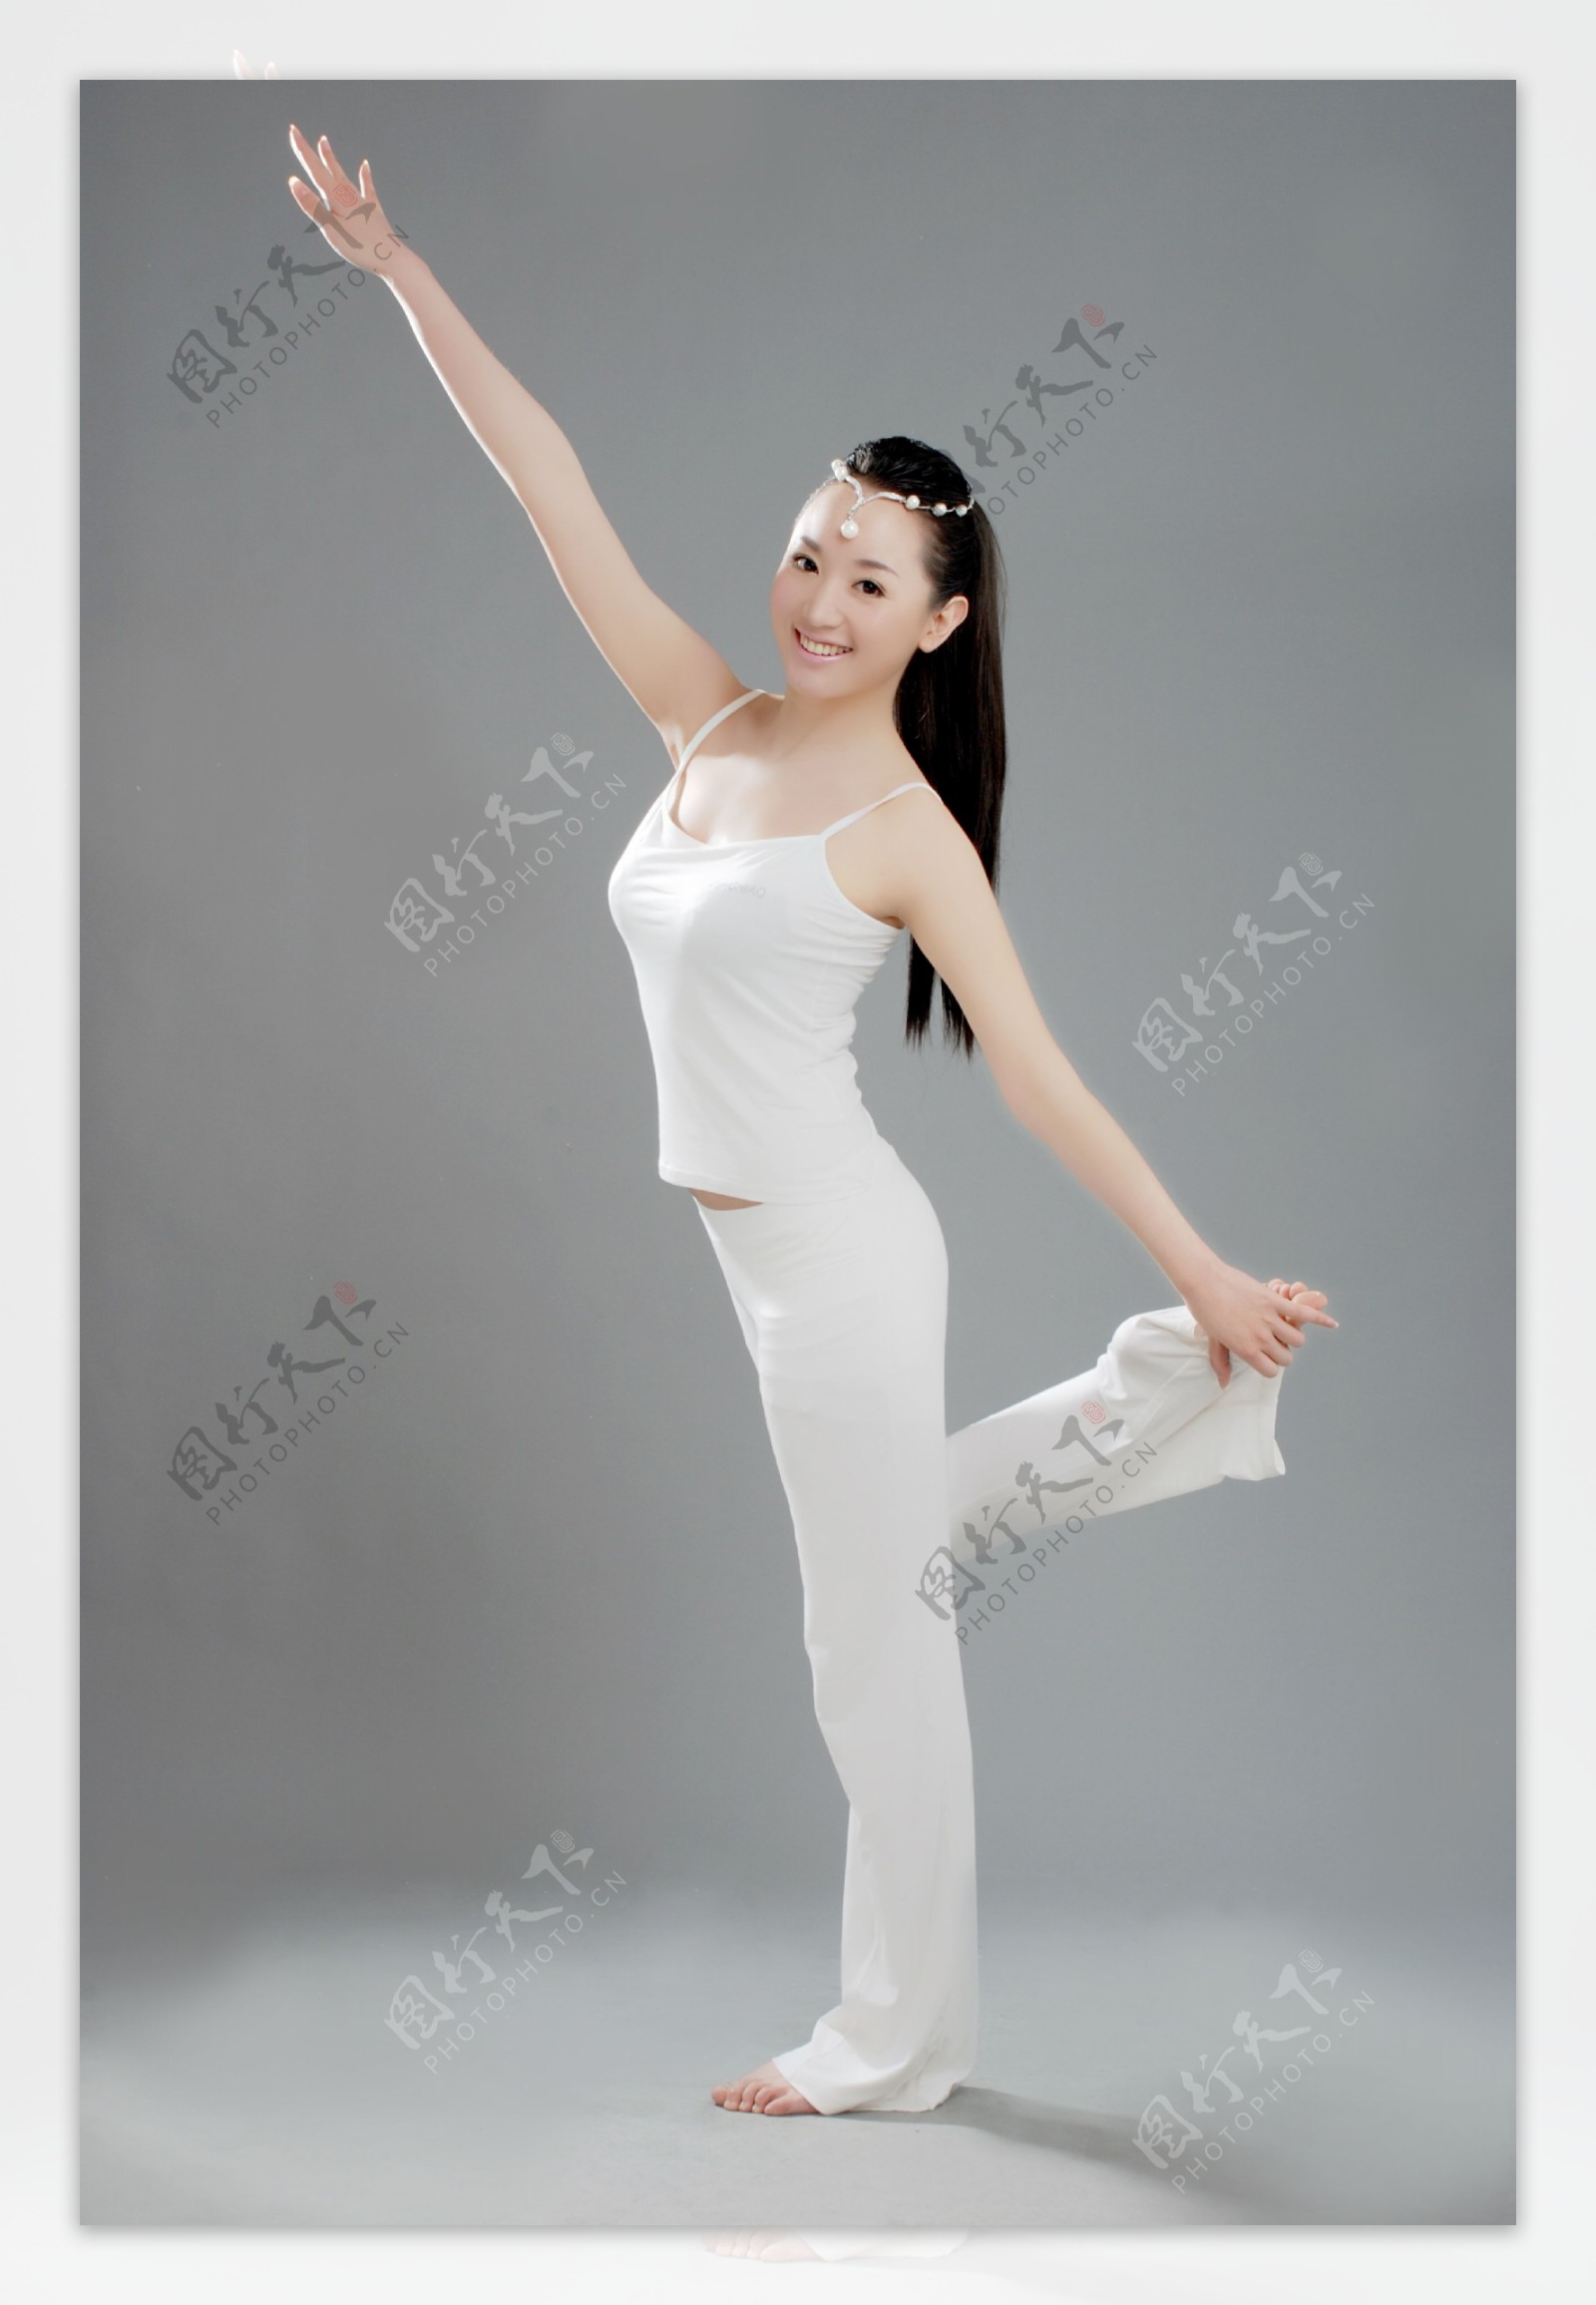 瑜伽美女舞王一式图片